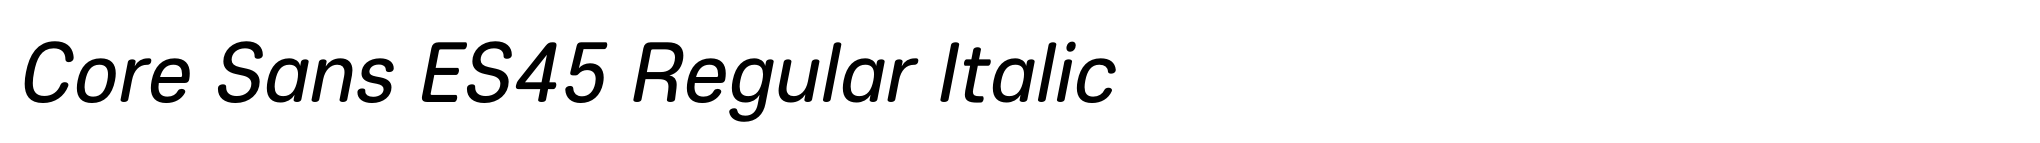 Core Sans ES45 Regular Italic image